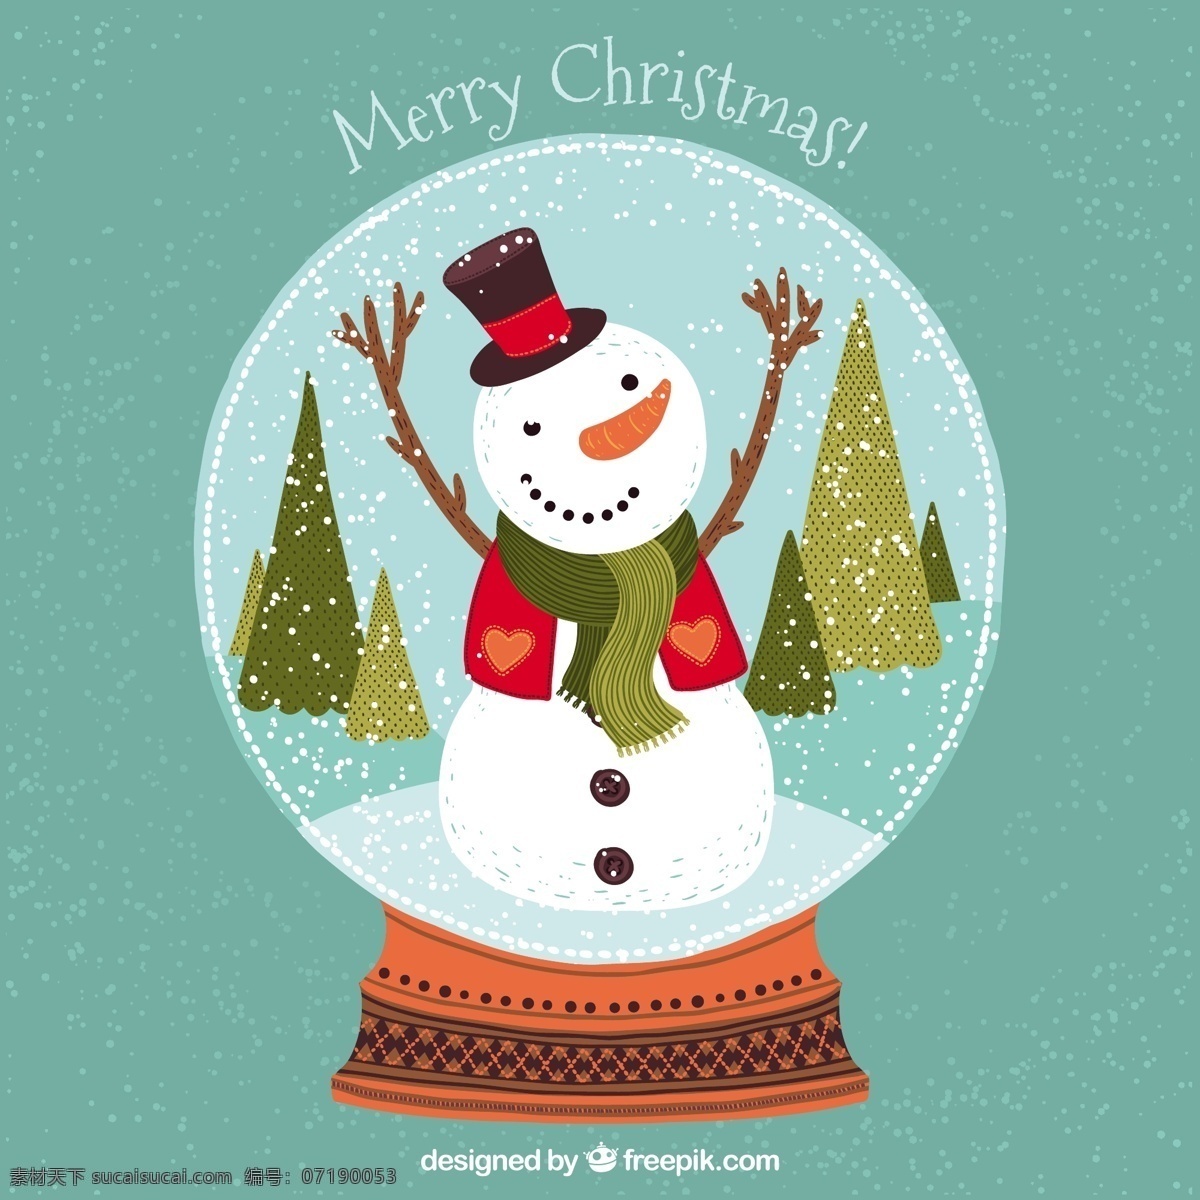 快乐 雪人 里面 水晶球 圣诞节 雪 圣诞快乐 冬天 地球 庆祝的节日 堆雪人 球 节日快乐 水晶 圣诞球 季节 节日 十二月 青色 天蓝色